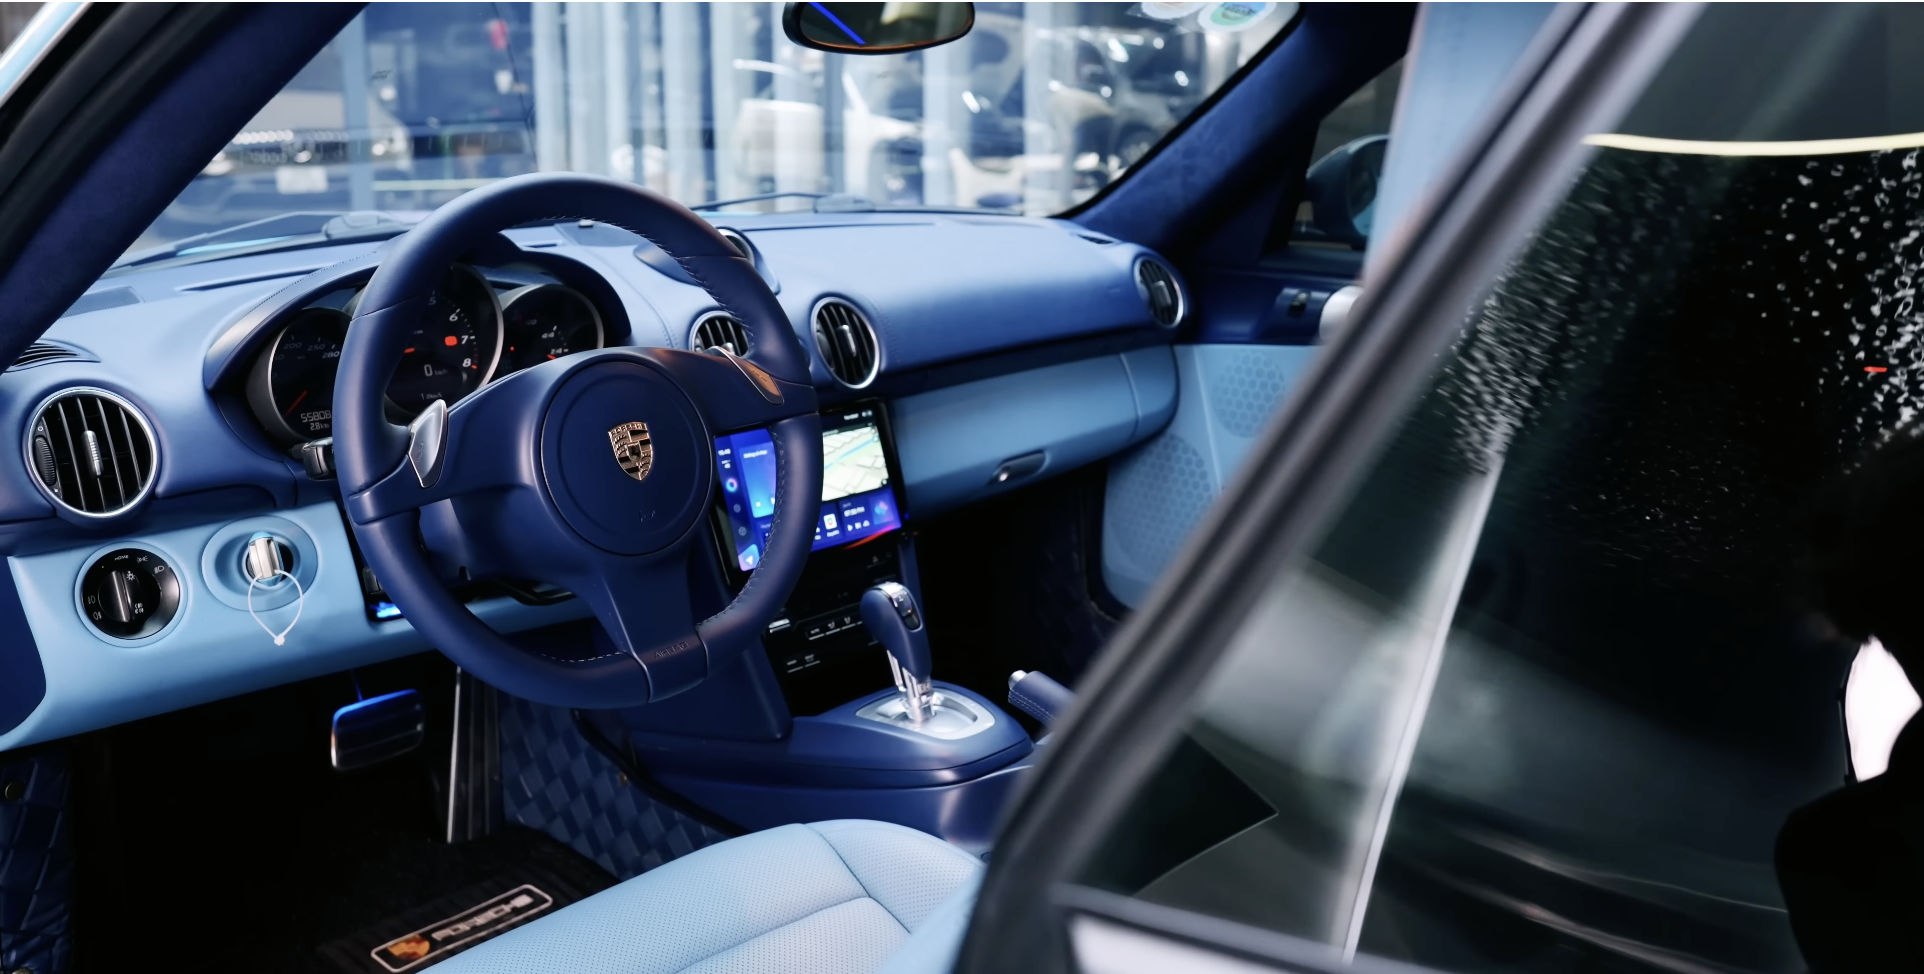 Thợ Việt ‘lột xác’ Porsche Cayman 15 tuổi theo phong cách xe đời mới, thêm màn hình Android và trần sao kiểu Rolls-Royce - Ảnh 7.